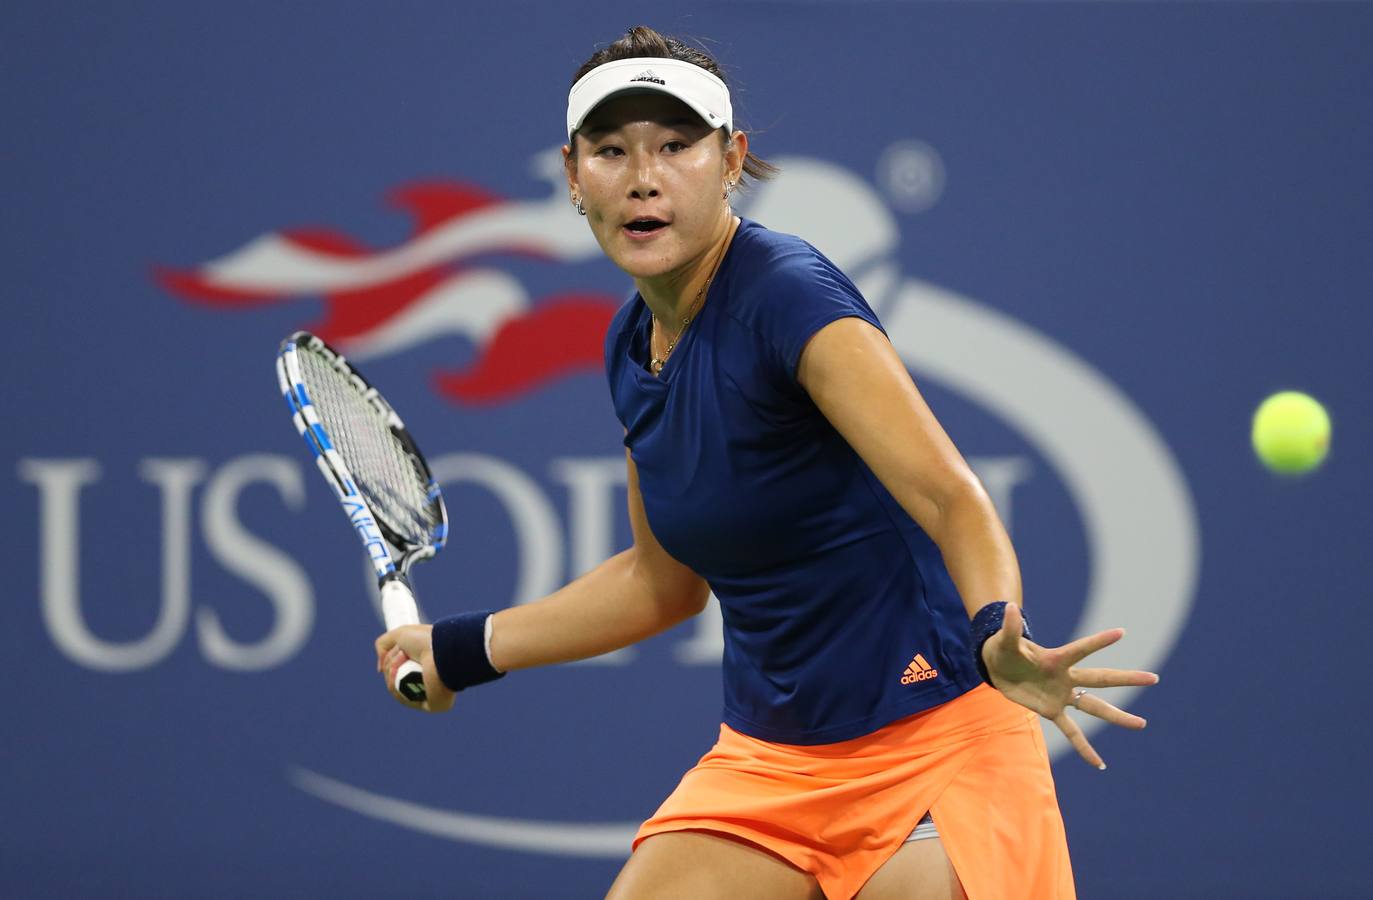 El maleficio de la tercera ronda en el Abierto de Estados Unidos quedó atrás para la tenista española Garbiñe Muguruza cuando lo consiguió al vencer en la segunda por 6-4 y 6-0 a la china Ying-Ying Duan.